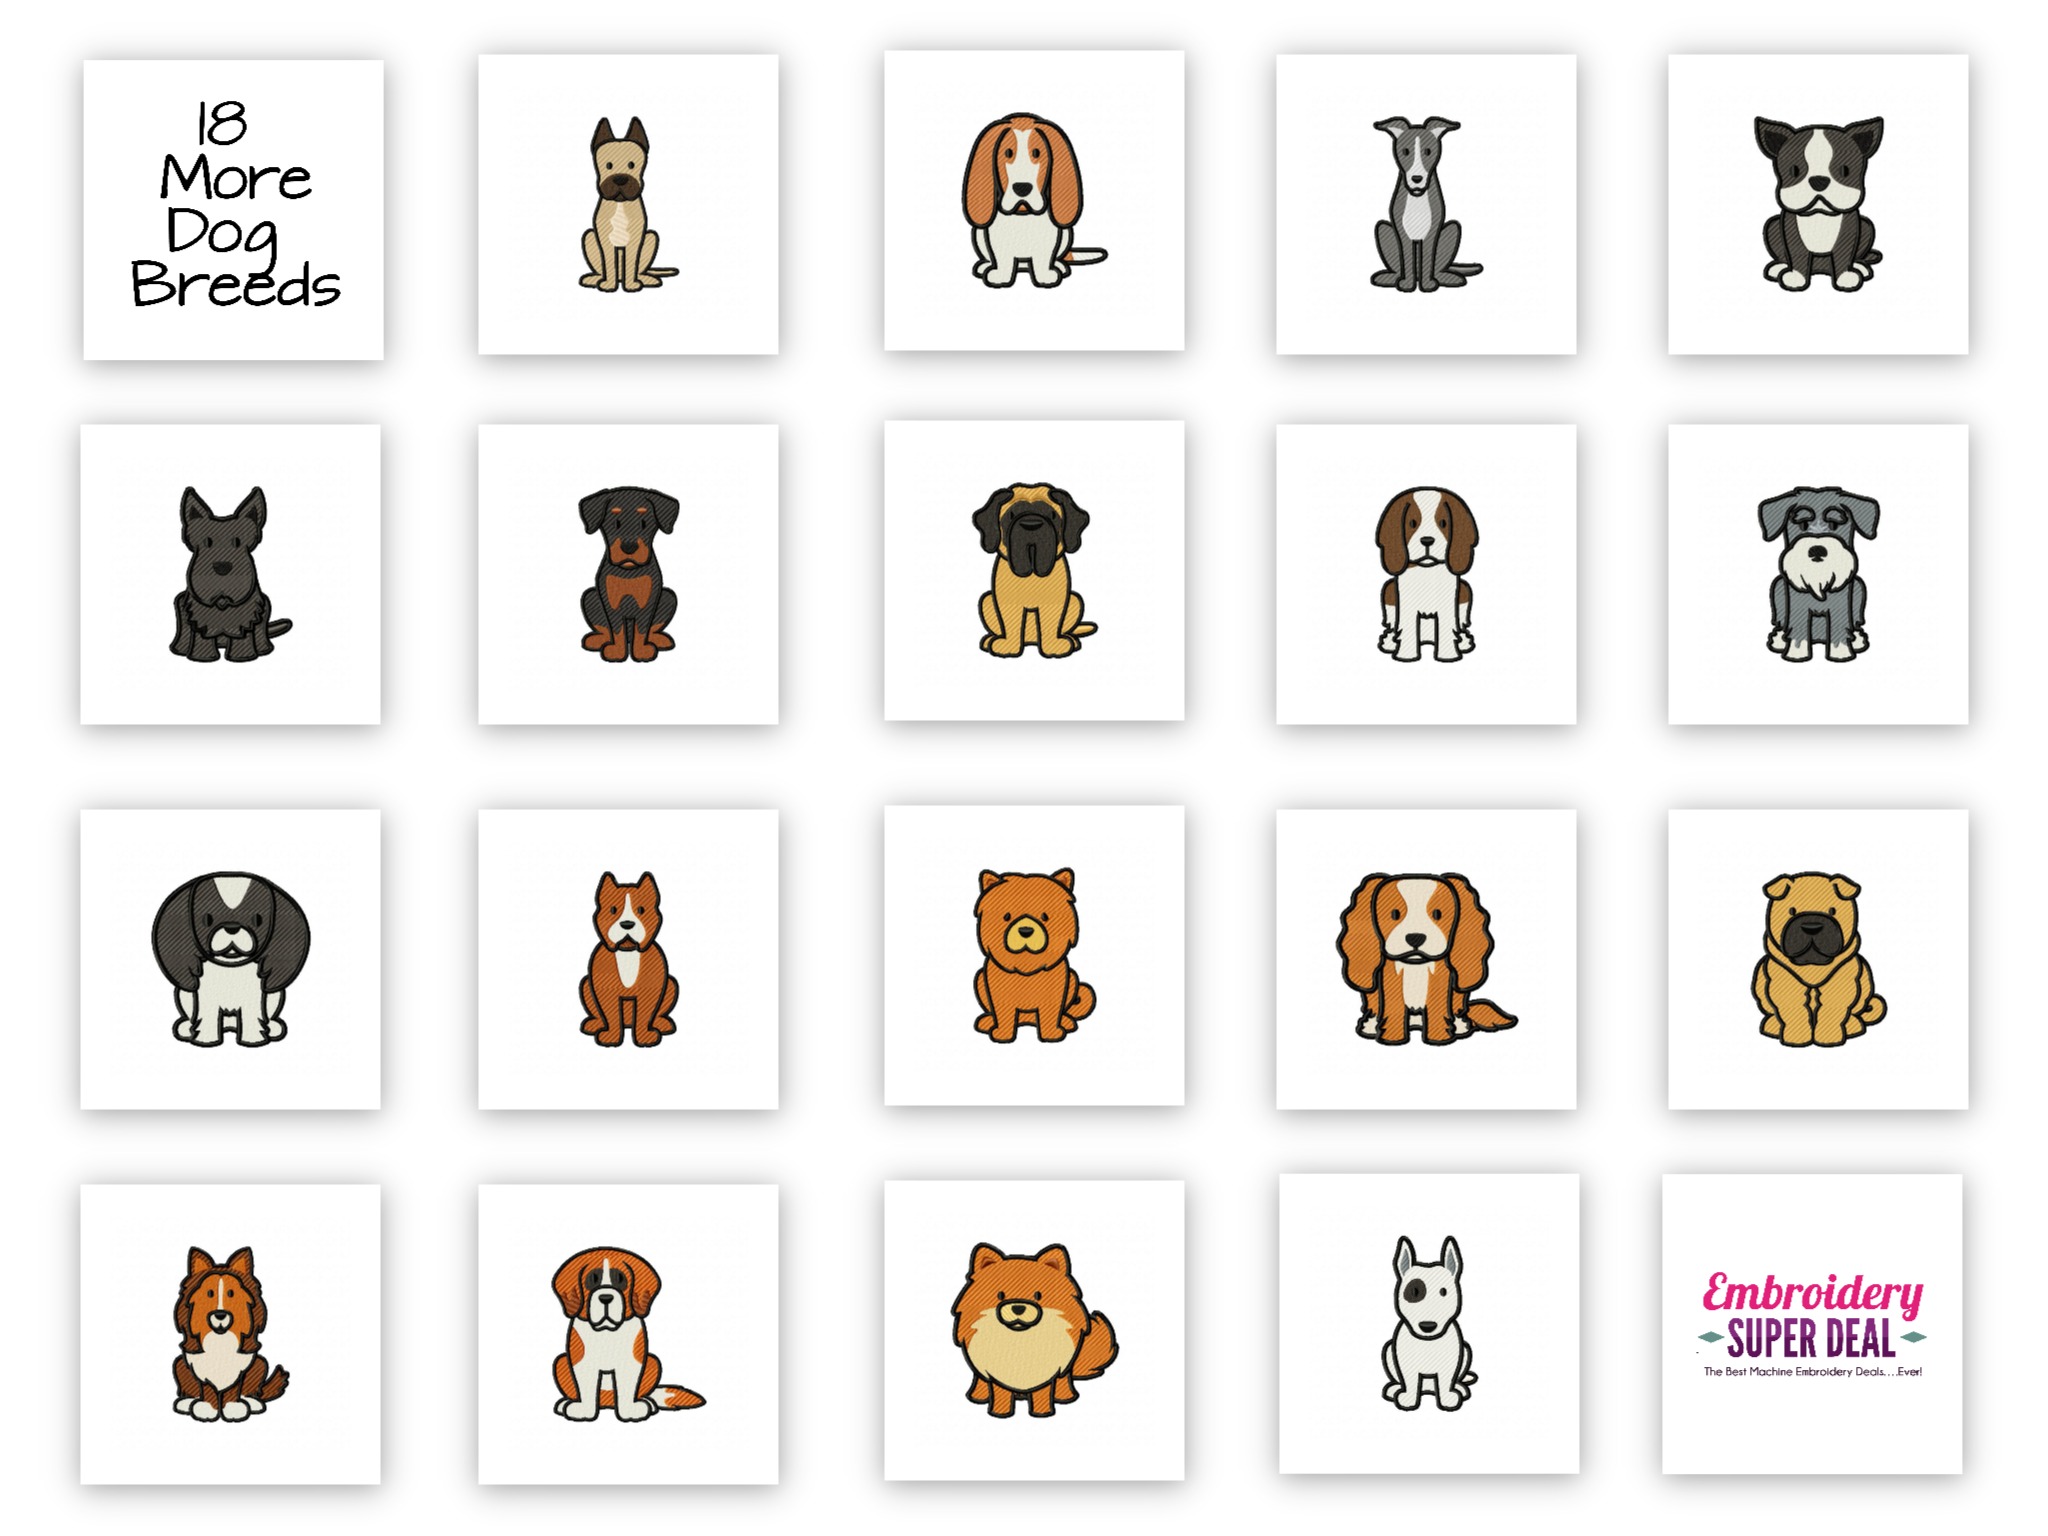 70 Designs � 36 Dog Breeds Embroidery Design Pack PLUS Bonus 18 In 